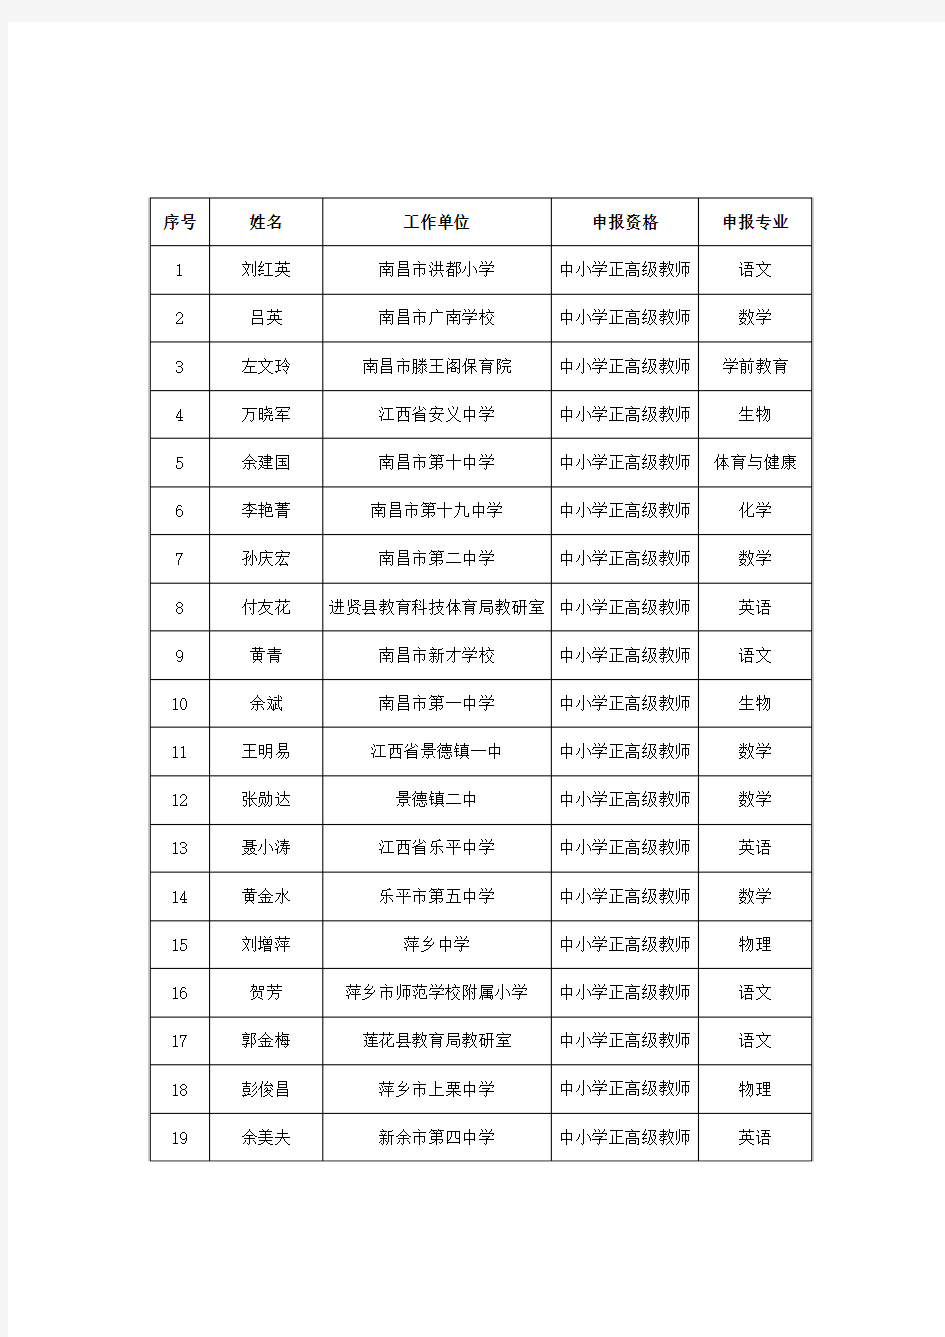 2017年江西省中小学正高级通过名单